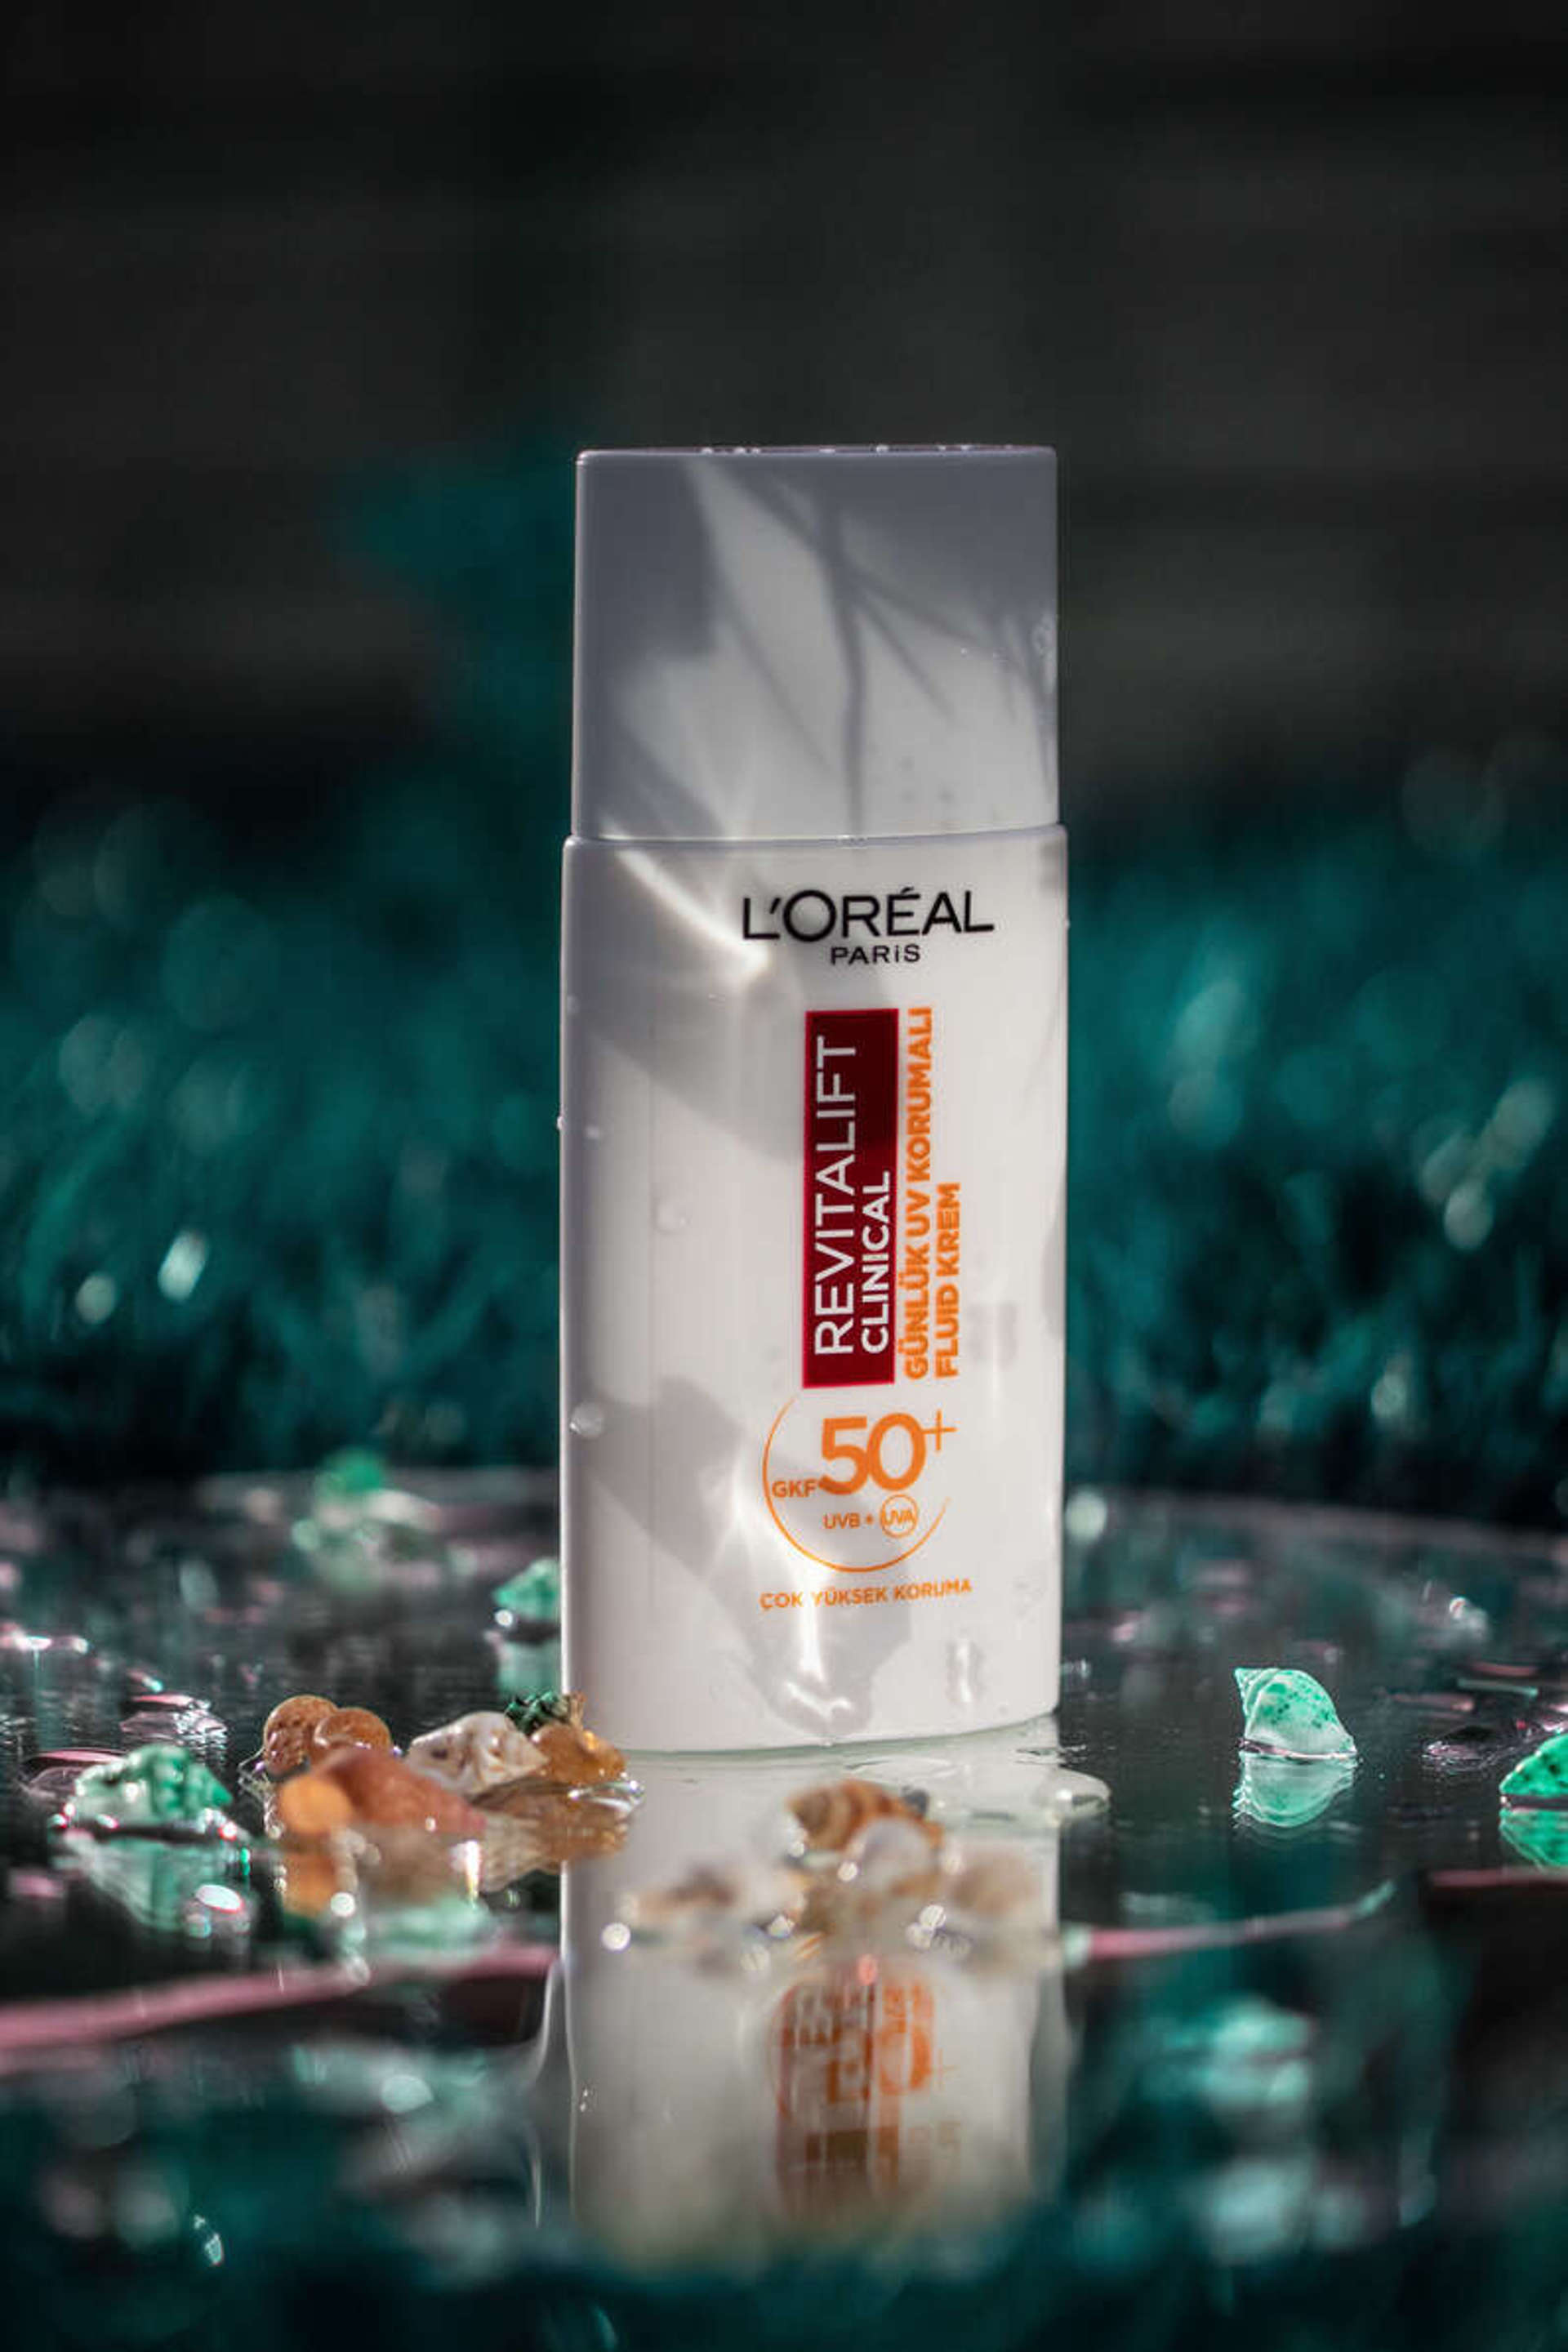 L'Oréal Paris Revitalift Clinical SPF 50+ Güneş Kremi’nin Özellikleri Nelerdir?